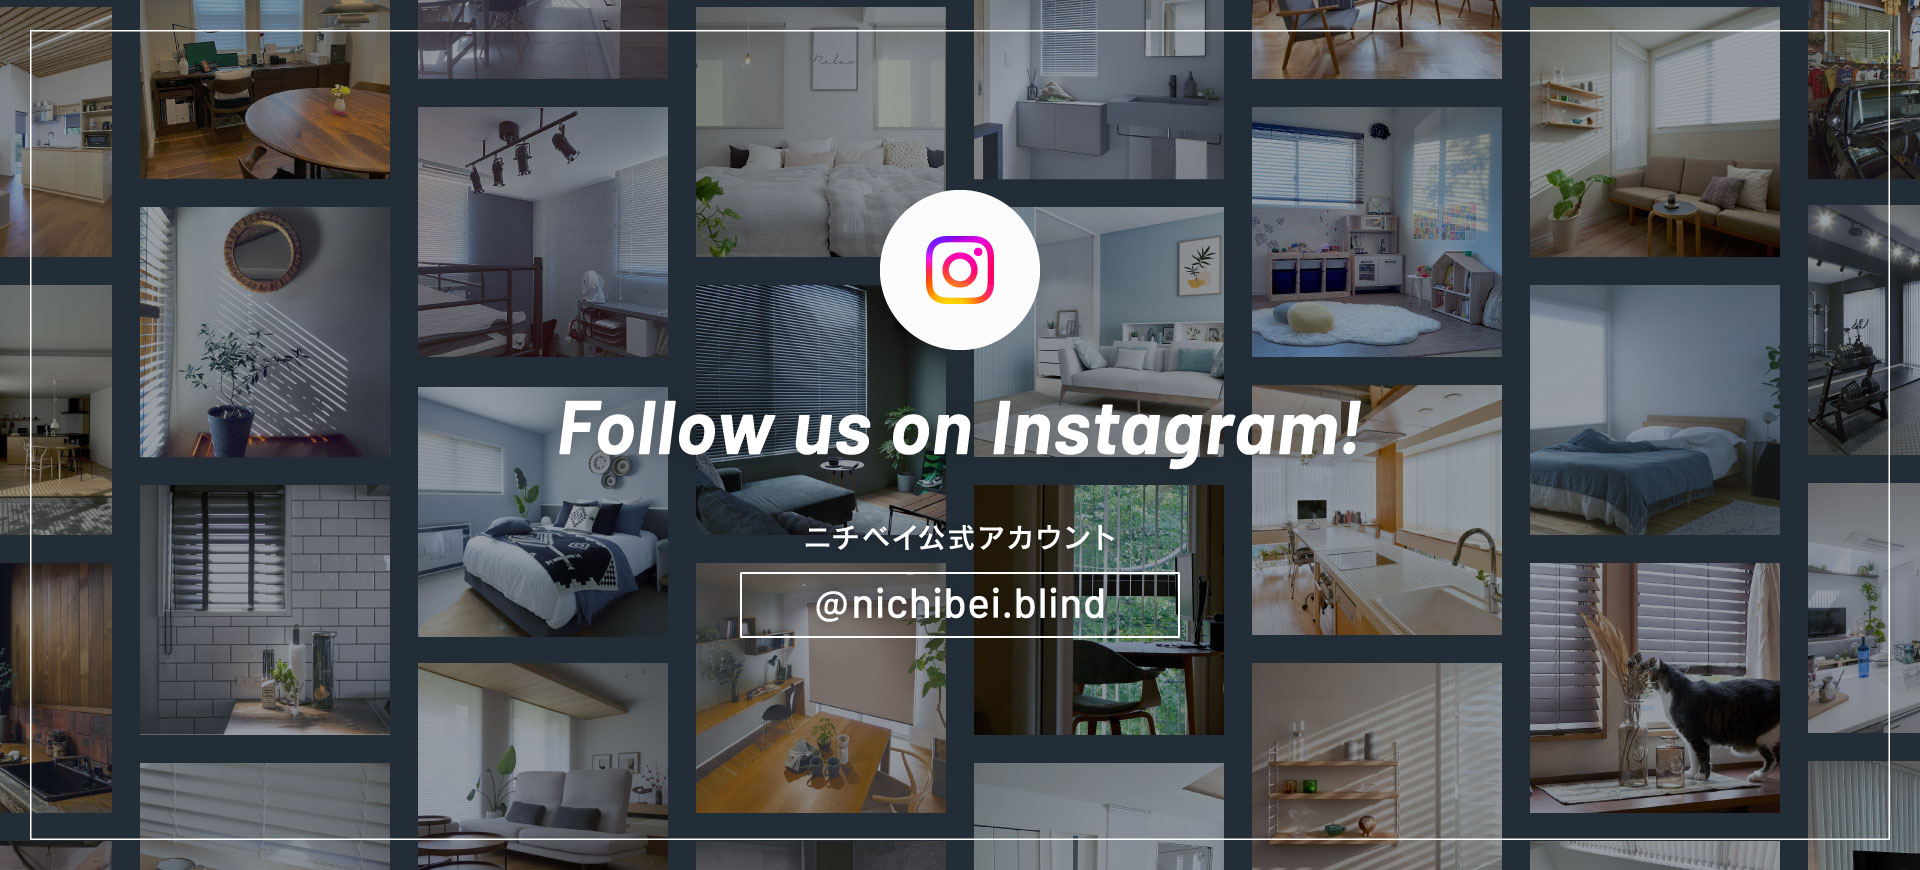 Follow us on Instagram! ニチベイ公式アカウント @nichibei.blind